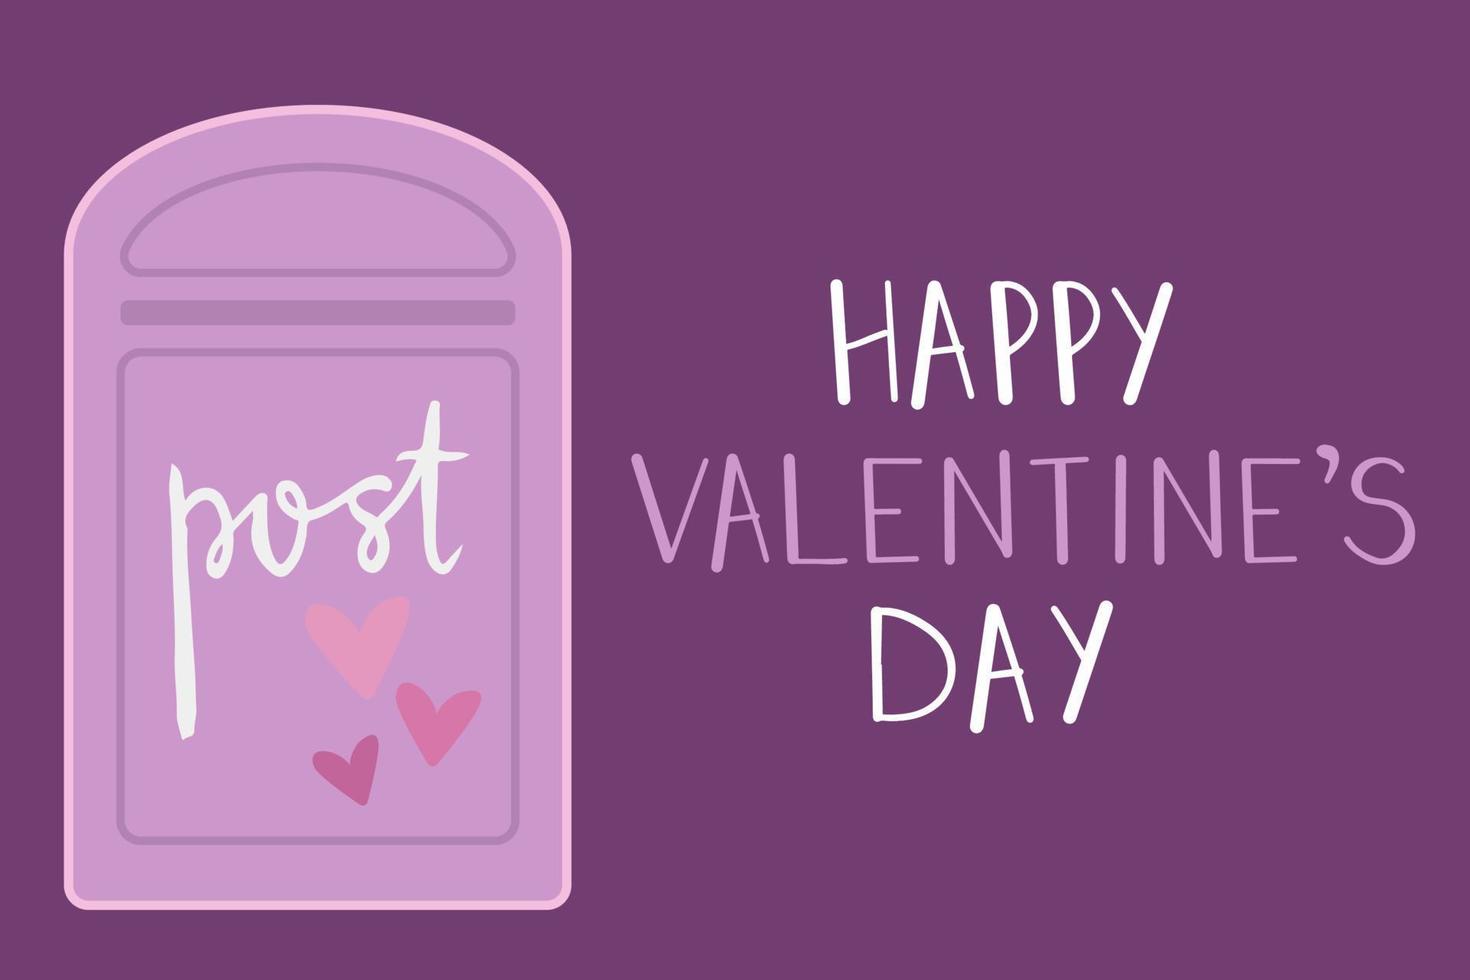 St. carte de voeux saint valentin. boîte aux lettres violette avec coeur pour lettres d'amour. vecteur